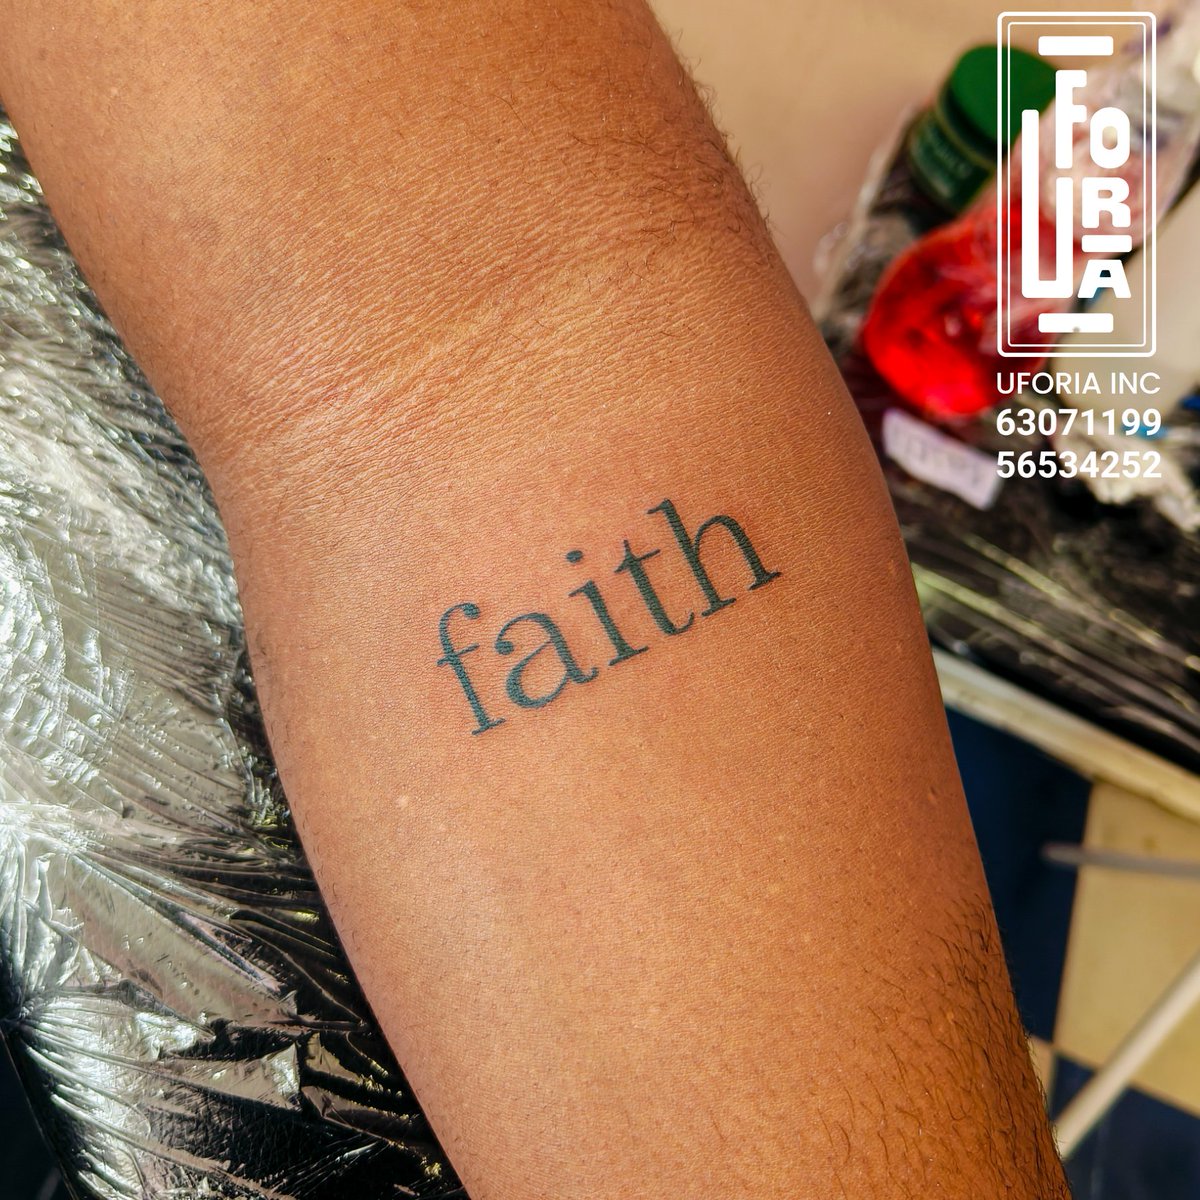 Faith is unseen but felt, faith is strength when we feel we have none, faith is hope when all seems lost
#faith #faithbased #tattooideas #tattooed #UforiaInc #uforiaexperience
#LsX